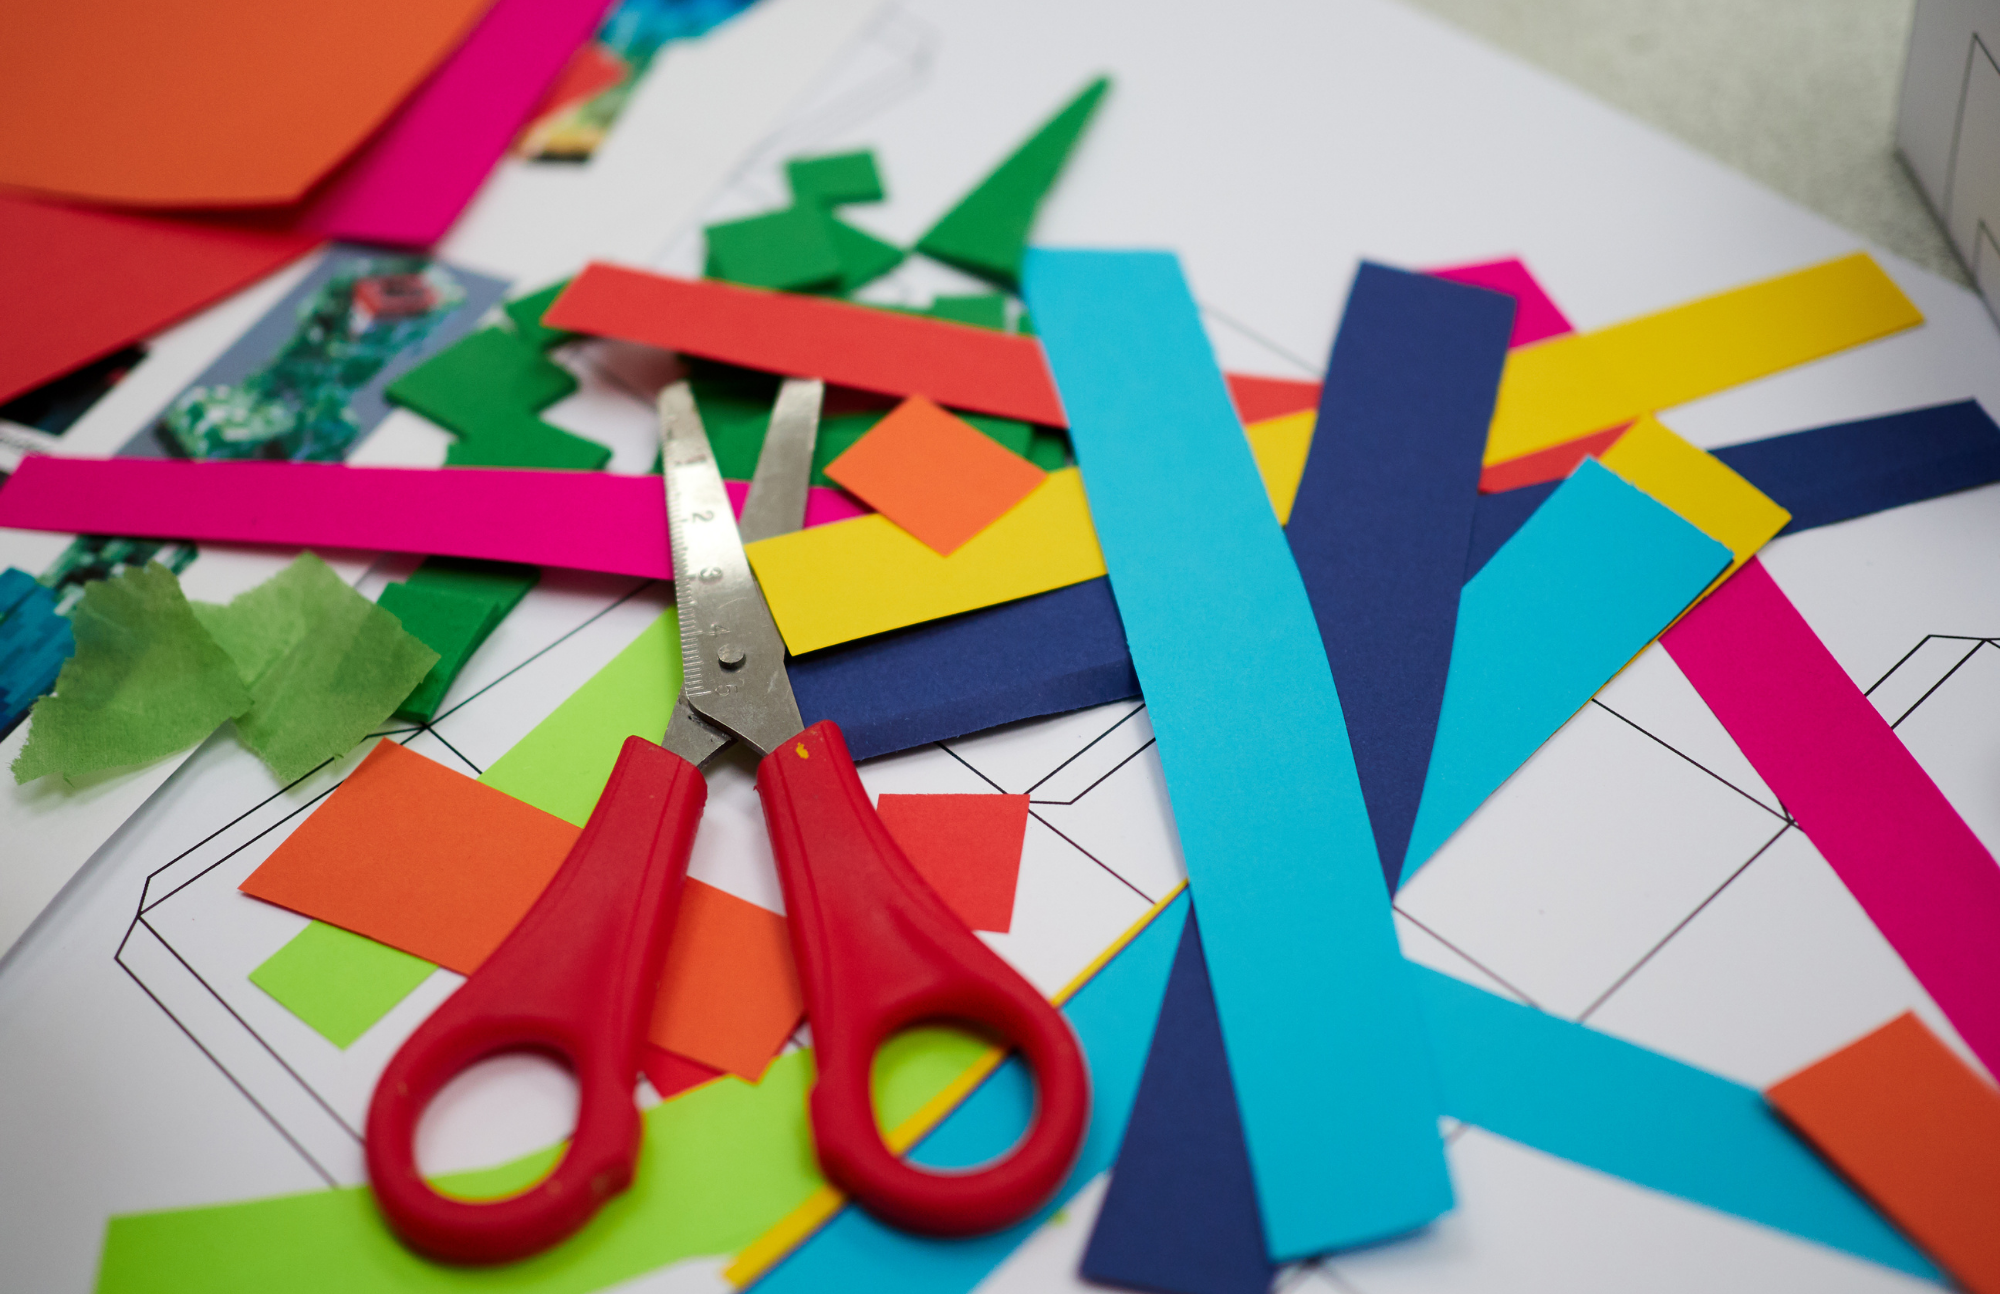 Scissors and cut up multi-colored craft paper